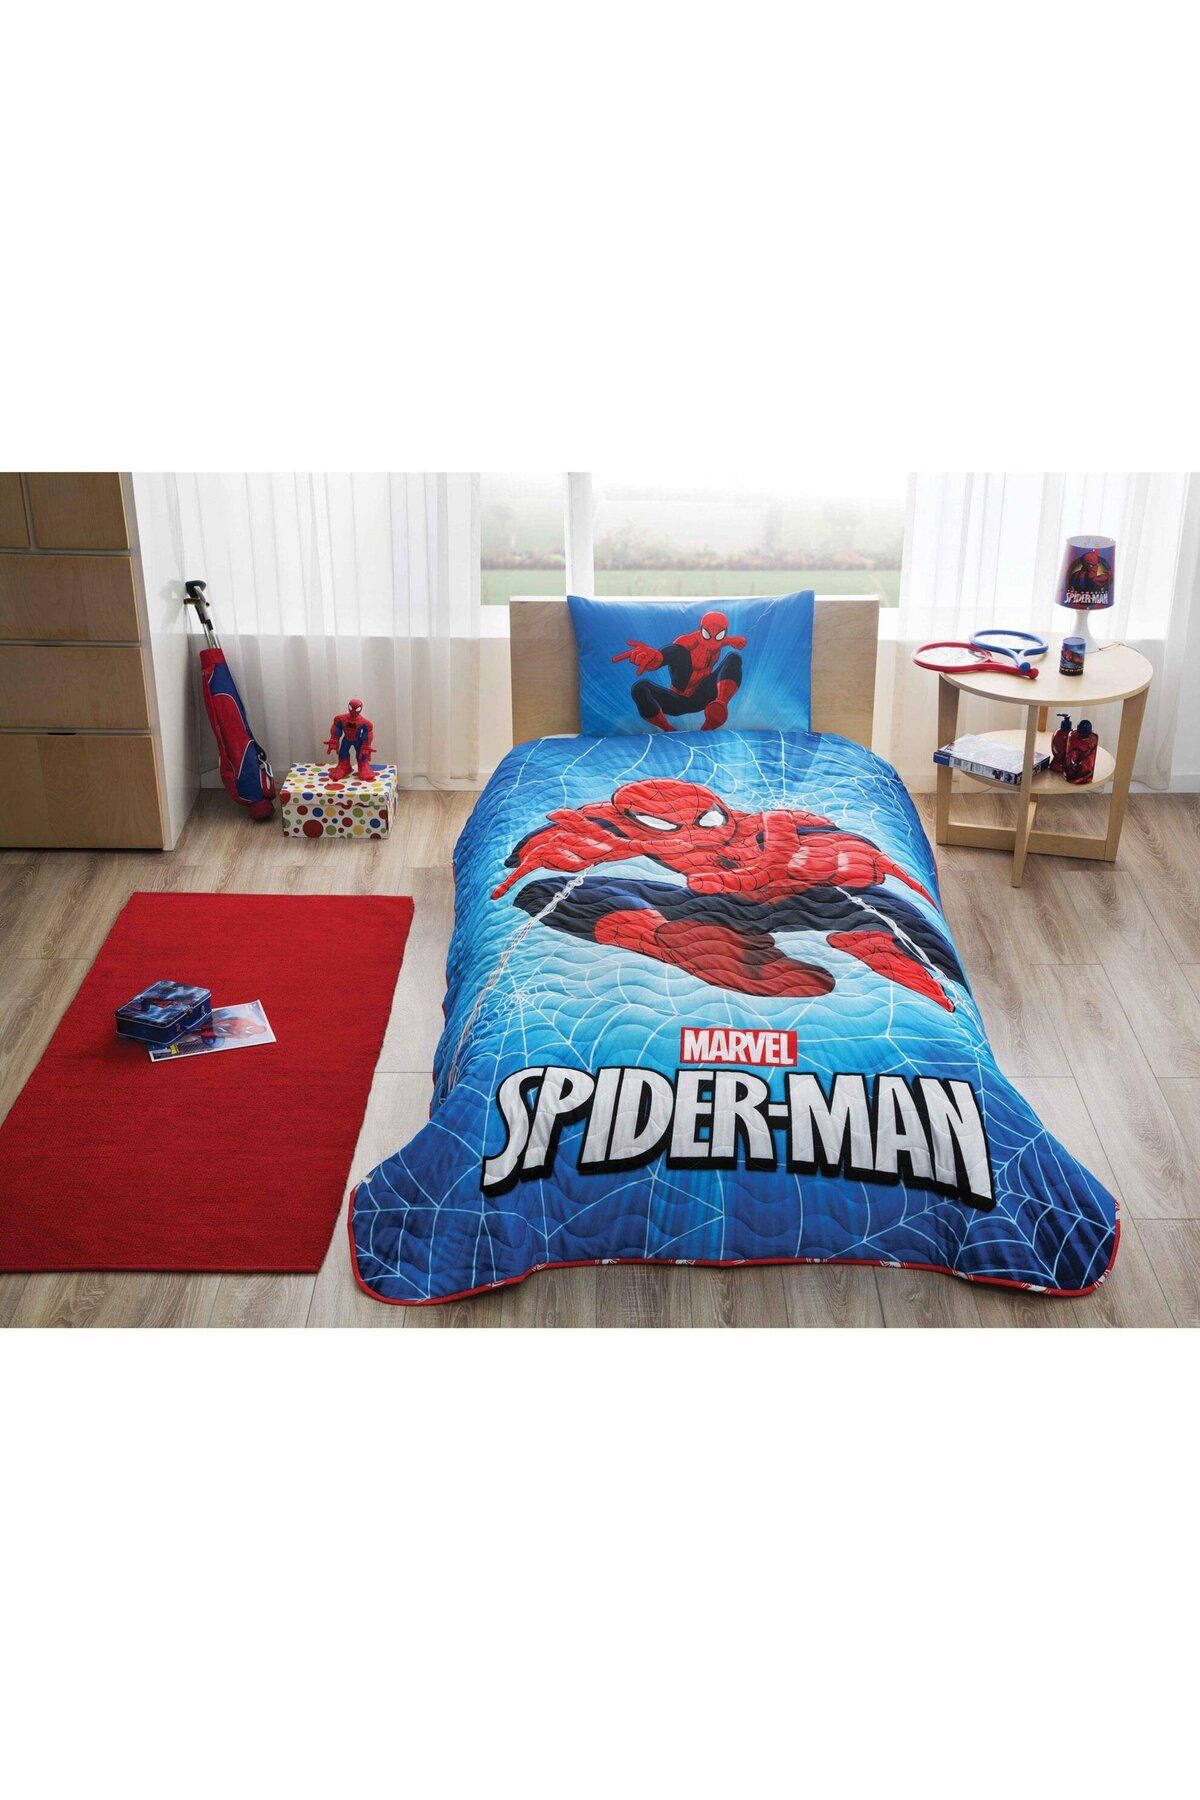 Taç Spiderman Skyscraper Lisanslı Yatak Örtüsü Yastık Kılıfı